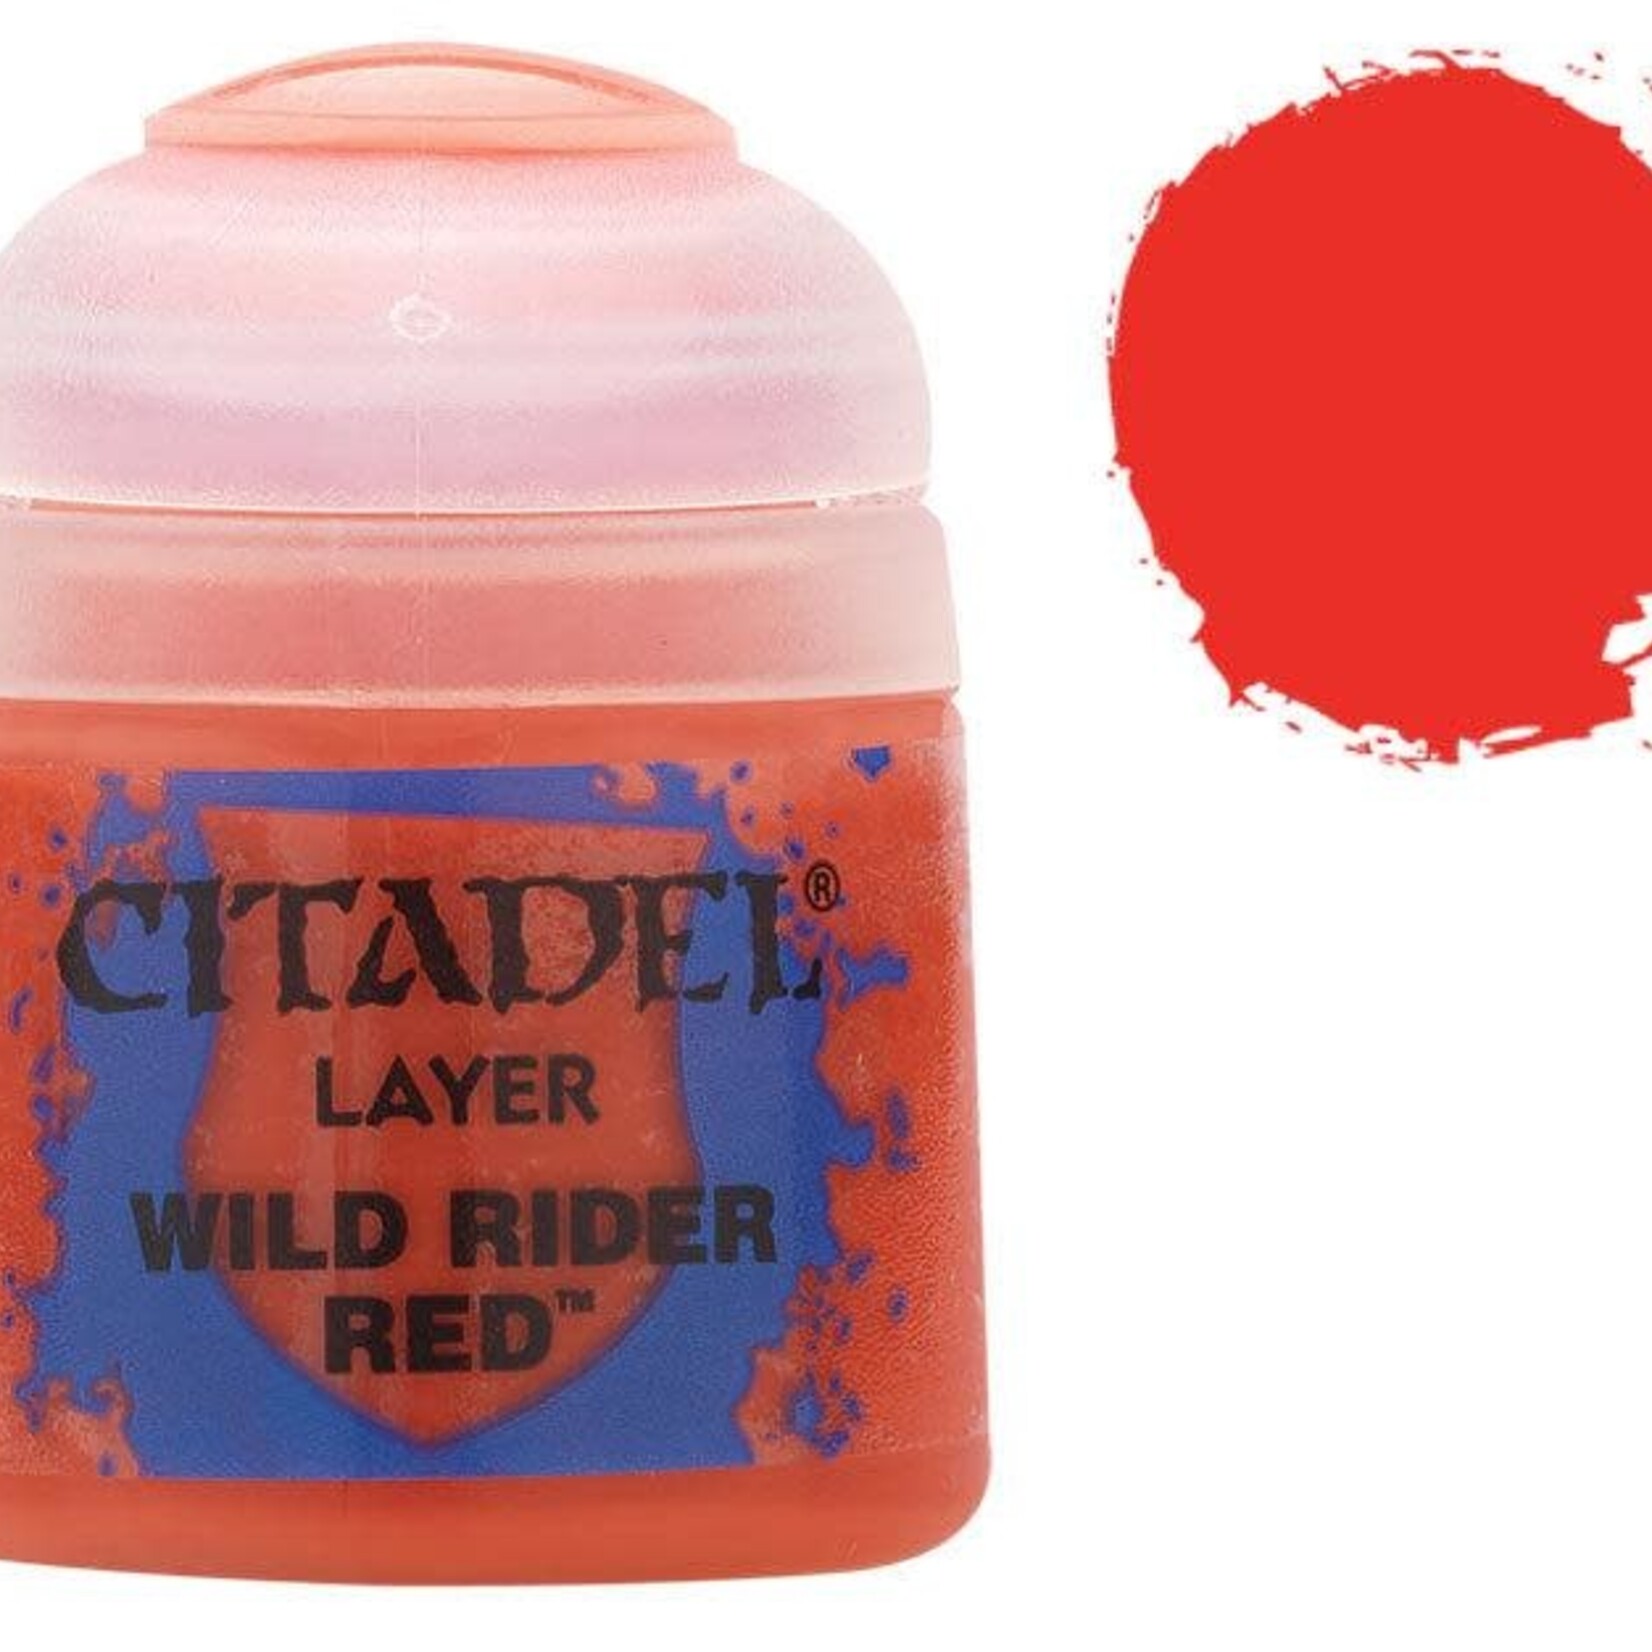 Games Workshop Citadel - Layer - Wild Rider Red